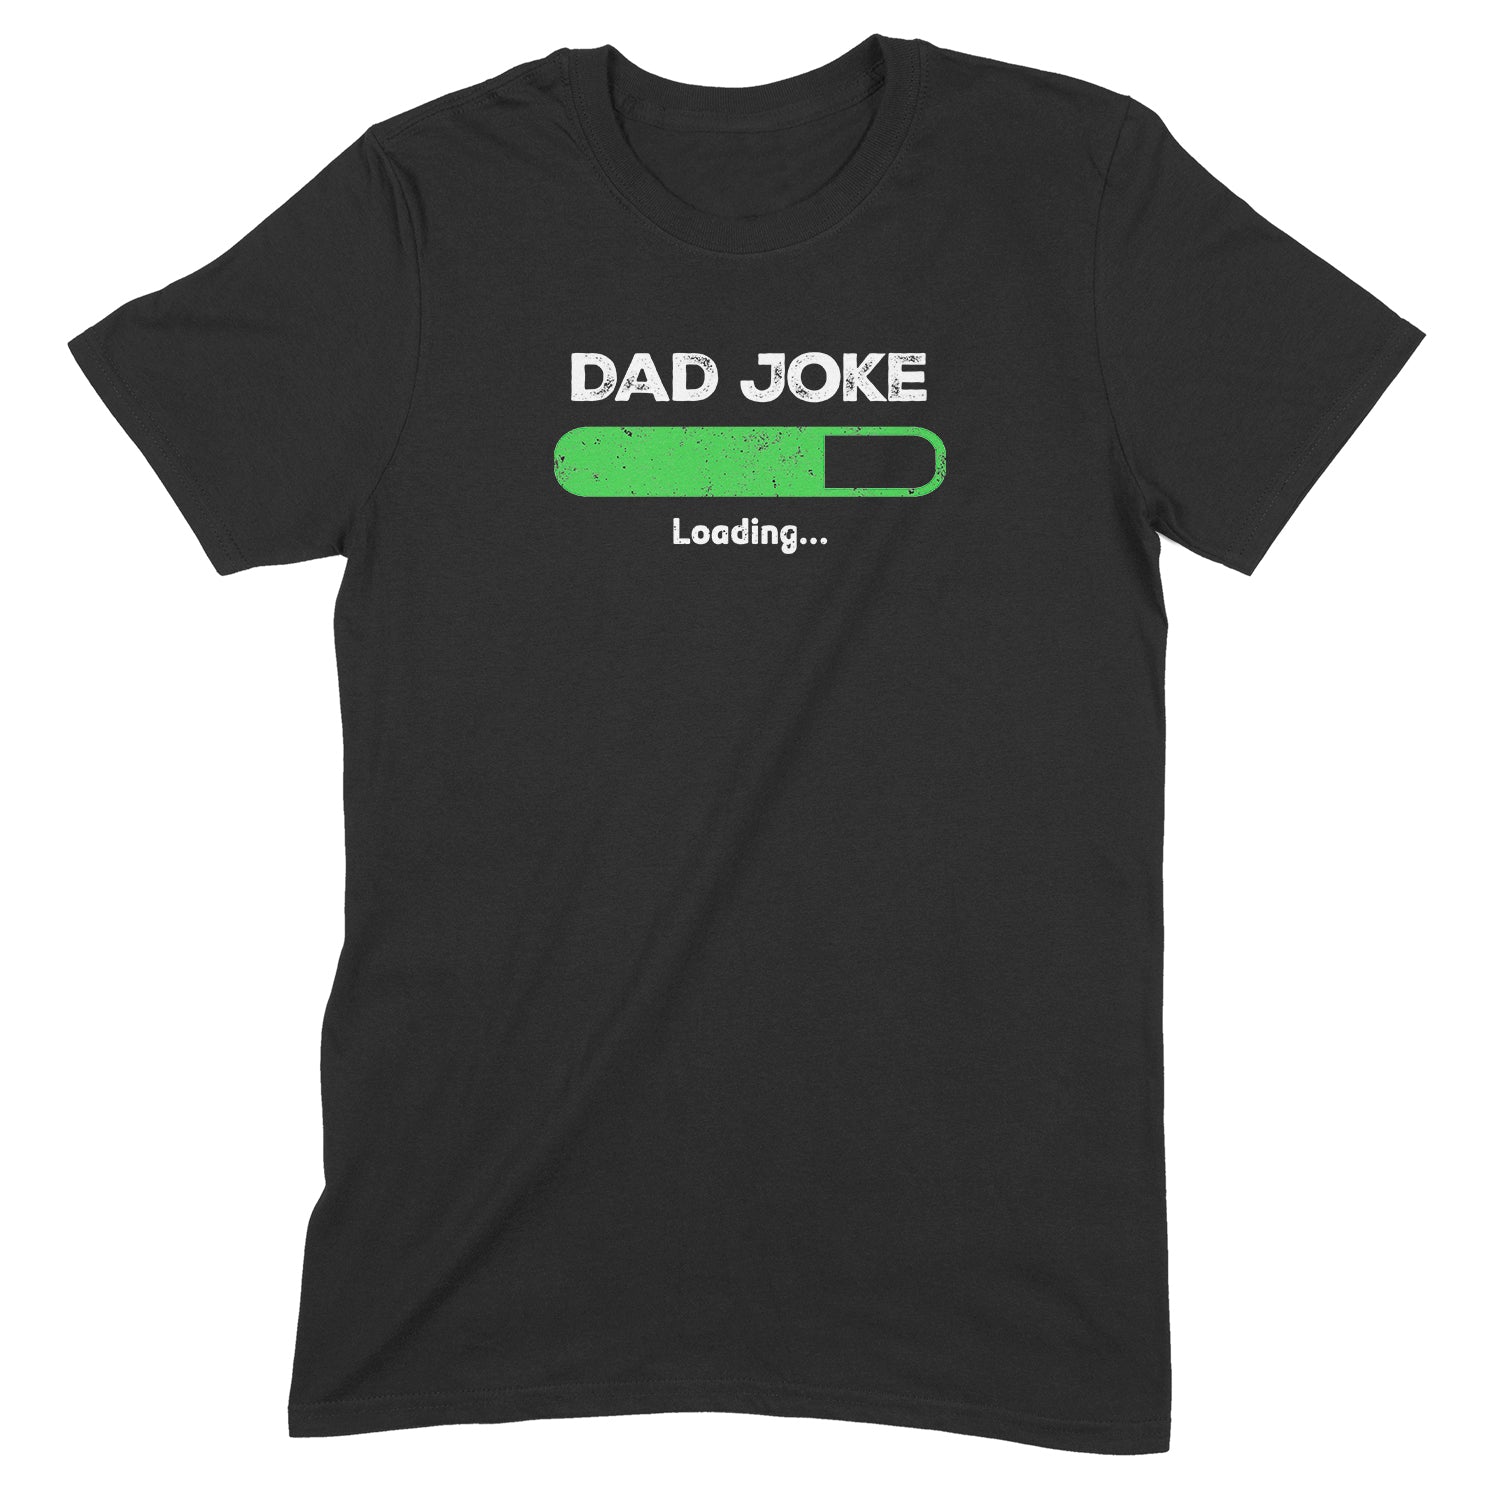 "Dad Joke Loading" Premium Midweight Ringspun Cotton T-Shirt - Mens Fits